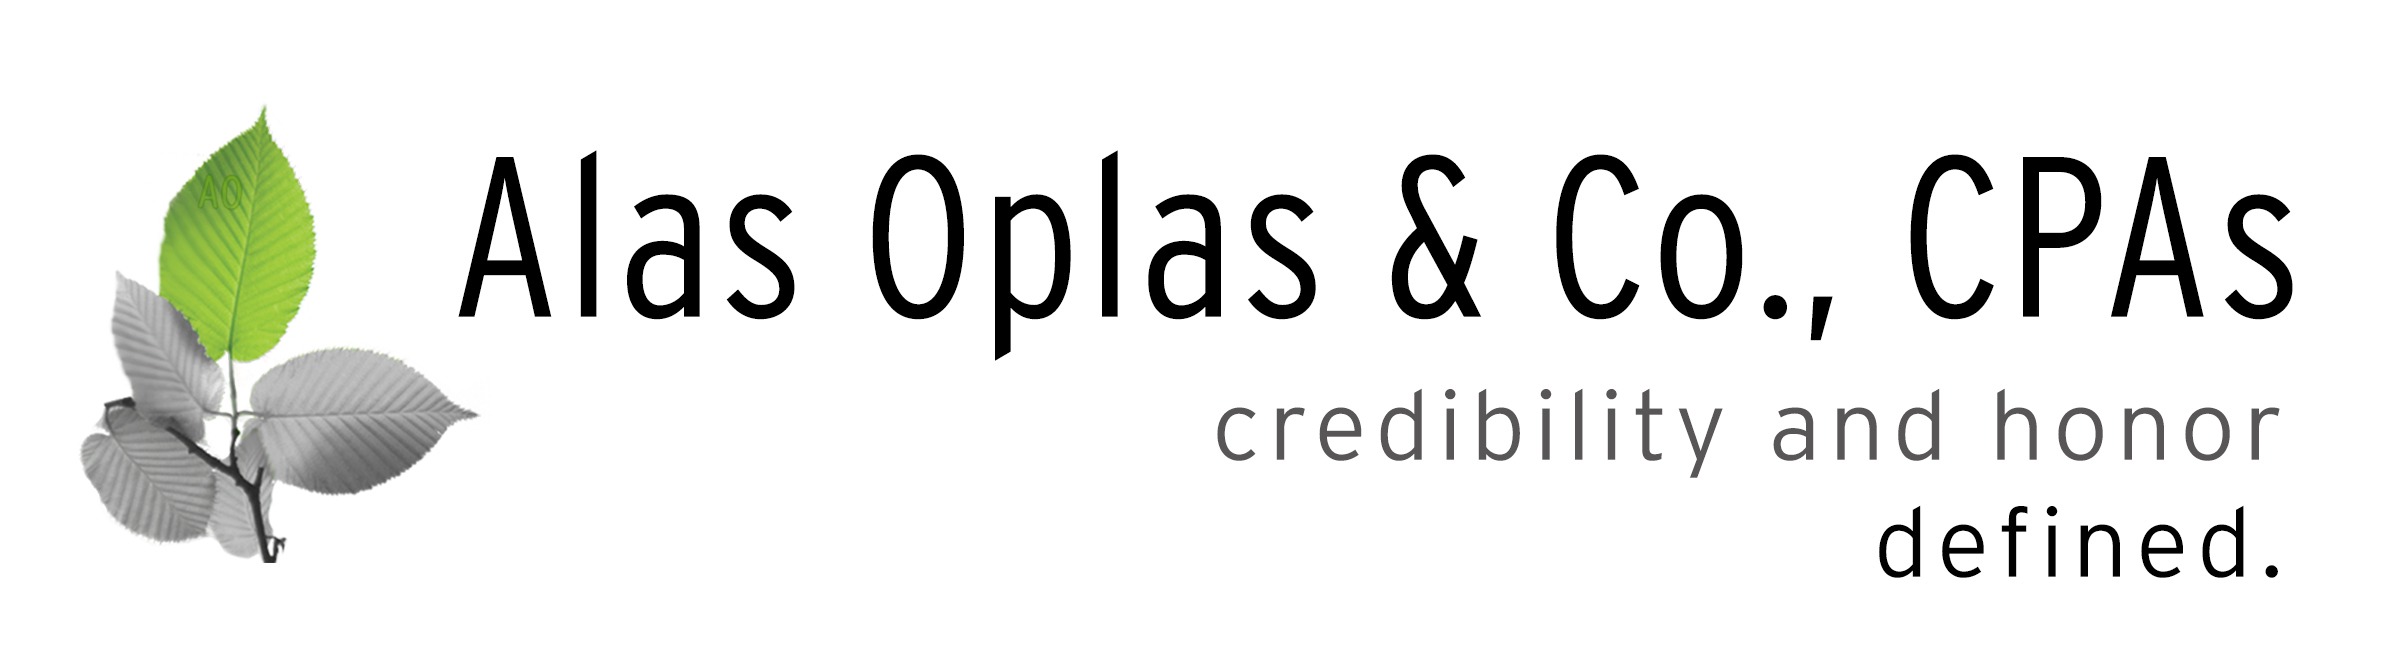 Alas Oplas & Co., CPAs